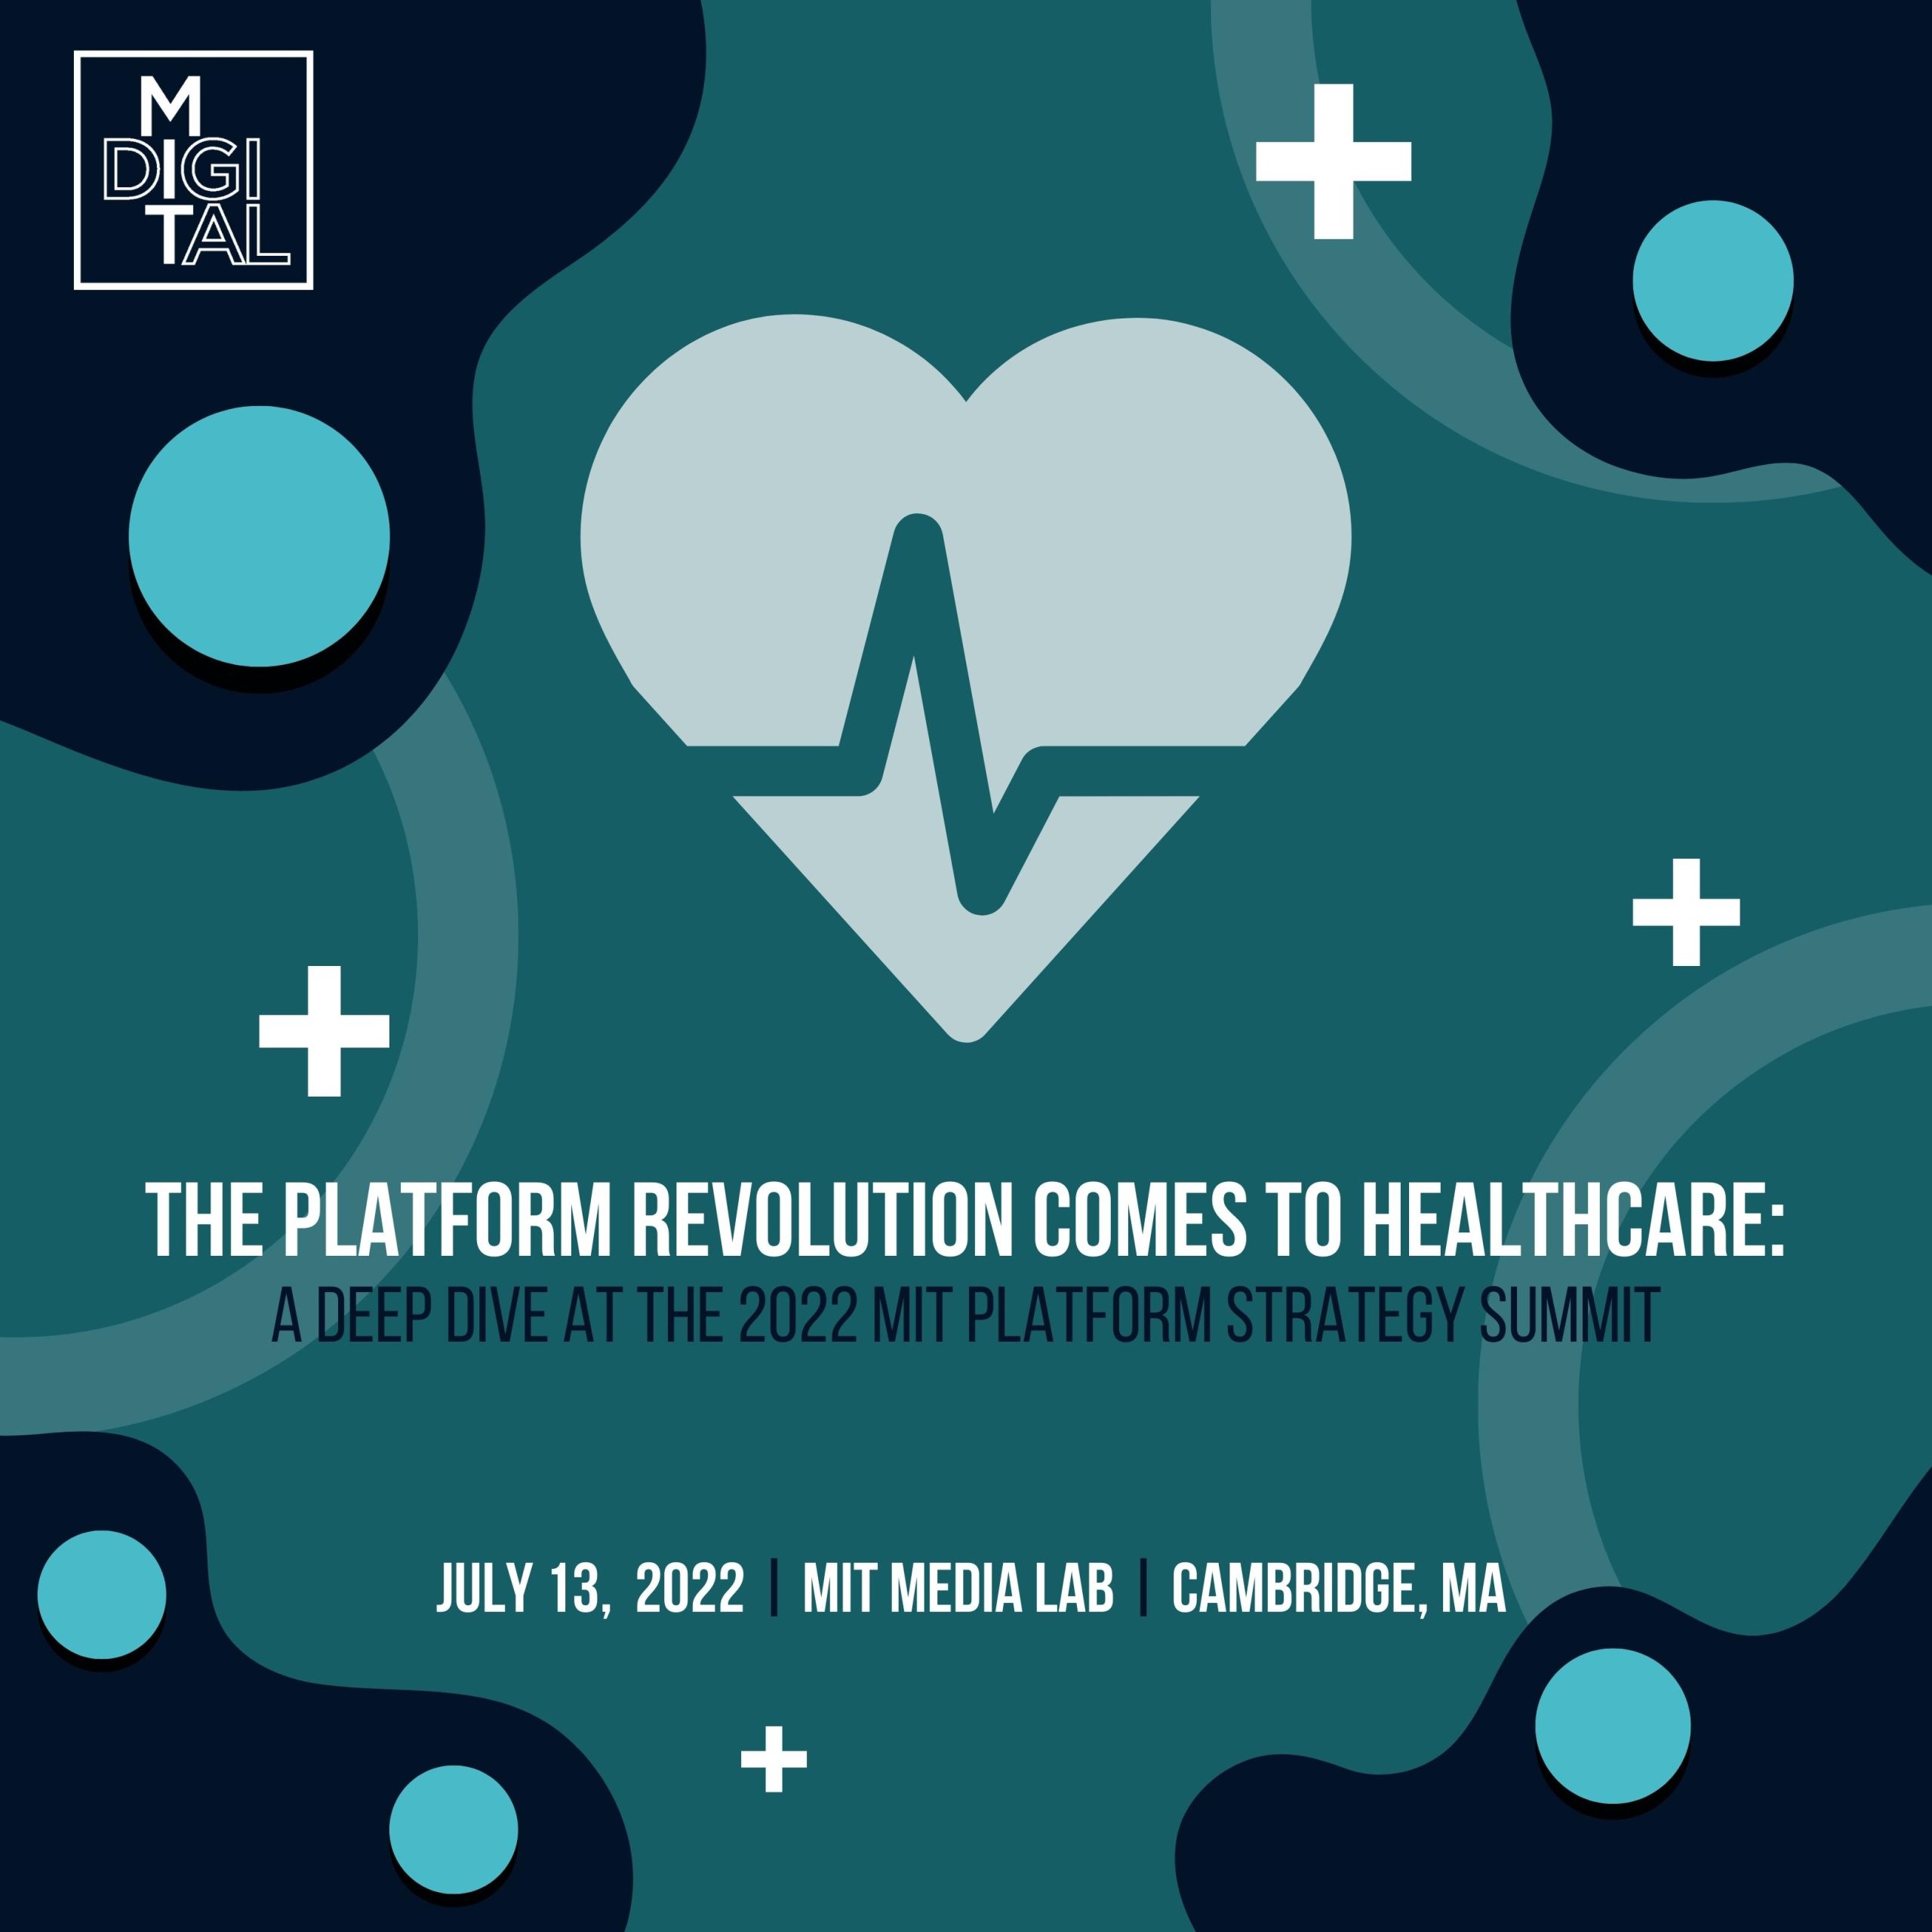 https://ide.mit.edu/wp-content/uploads/2022/05/Platform-Healthcare-Event-Promo-scaled.jpg